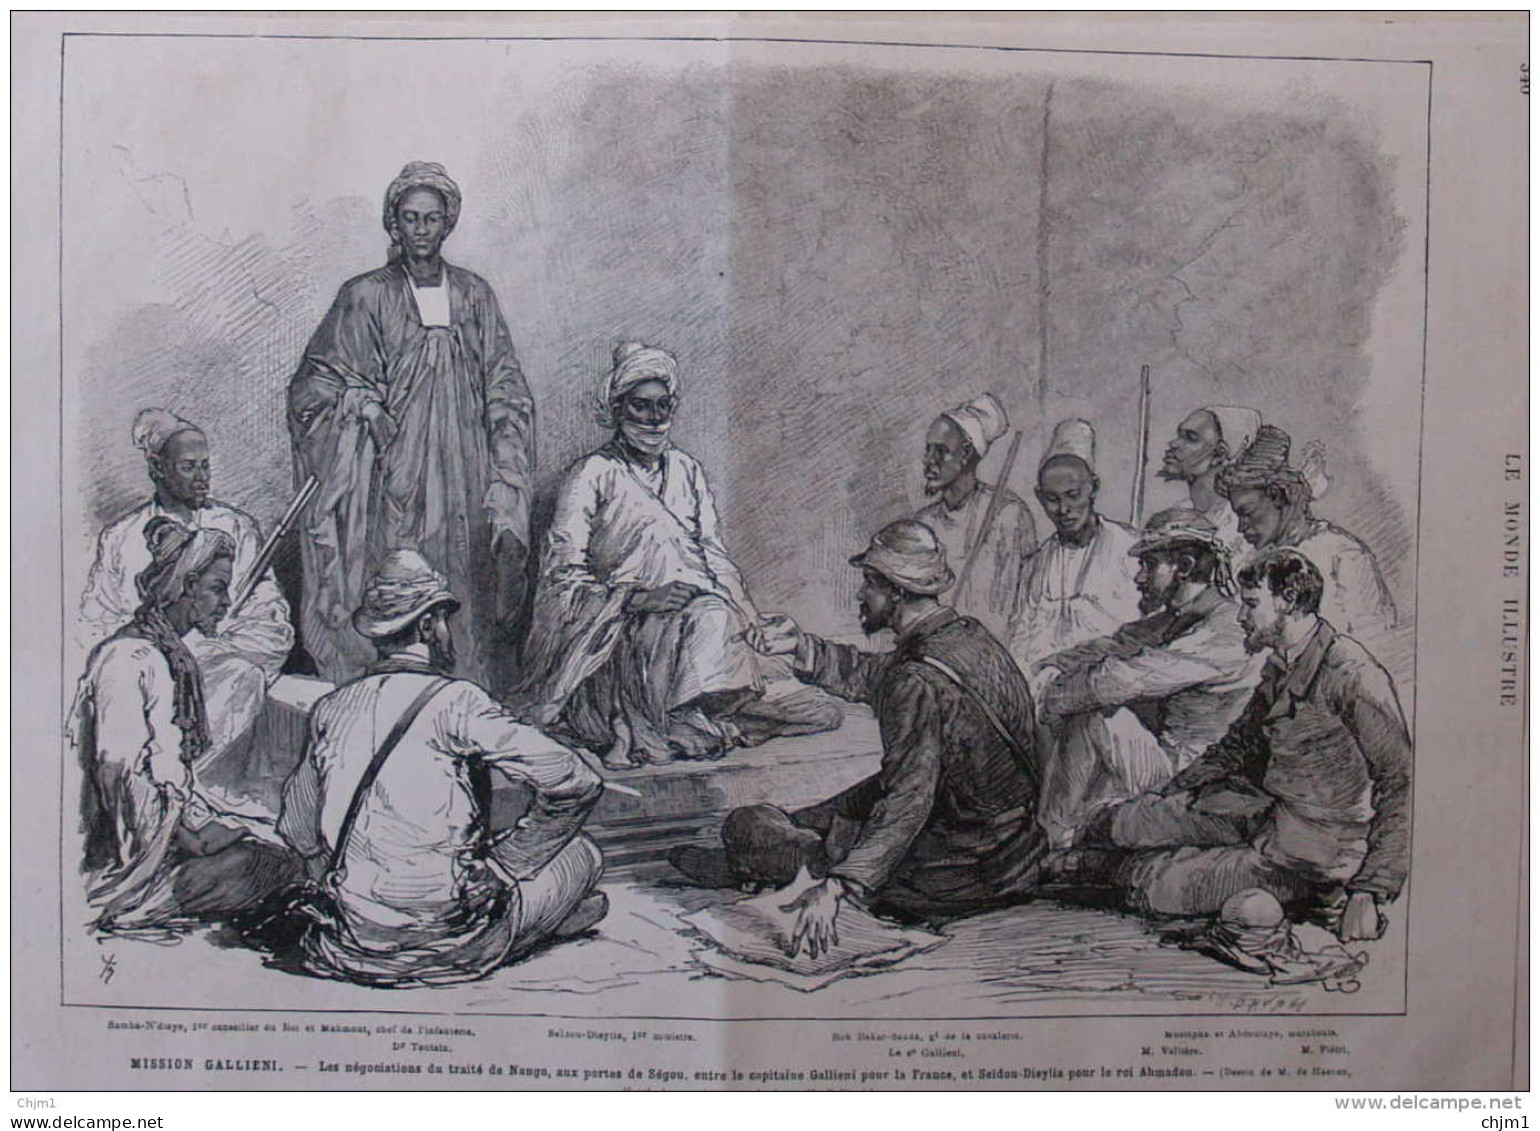 Mission Gallieni - Seidou-Dieylia, Ministre - Bou Bakar-Saada - Dr. Tautain - Page Original  1881 - Documents Historiques